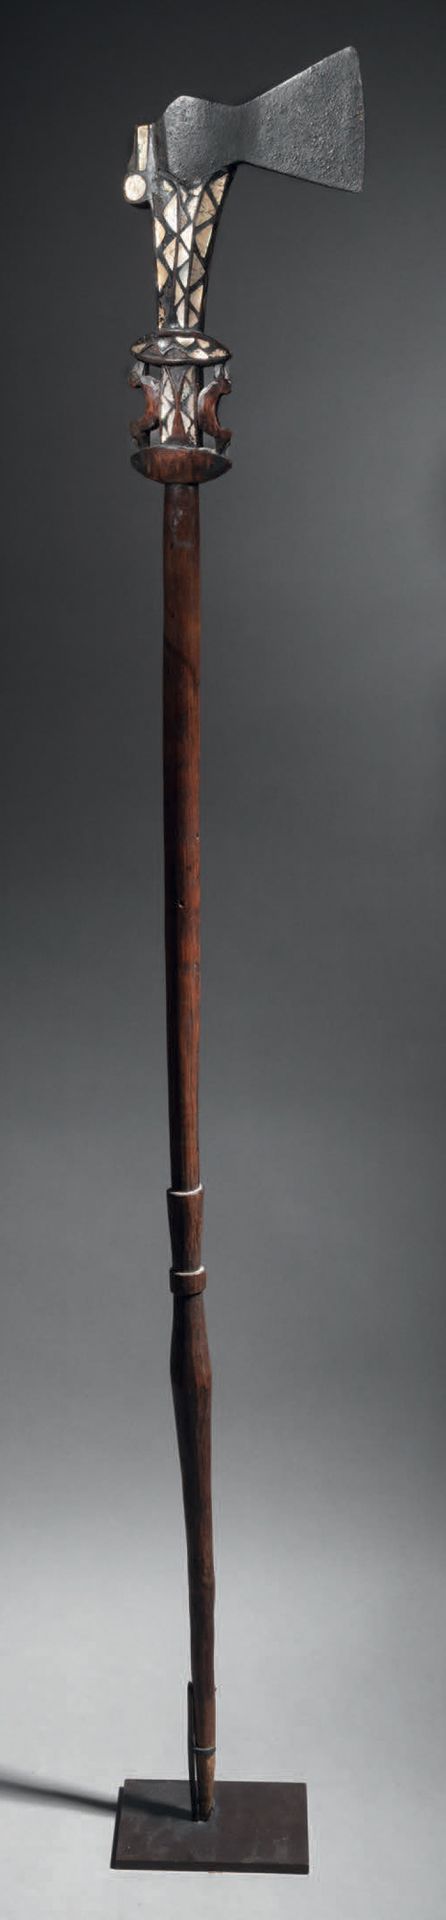 Null Zeremonialbeil, Salomonen
Holz, Perlmutt und Eisen
H. 134 cm
Zeremonialbeil&hellip;